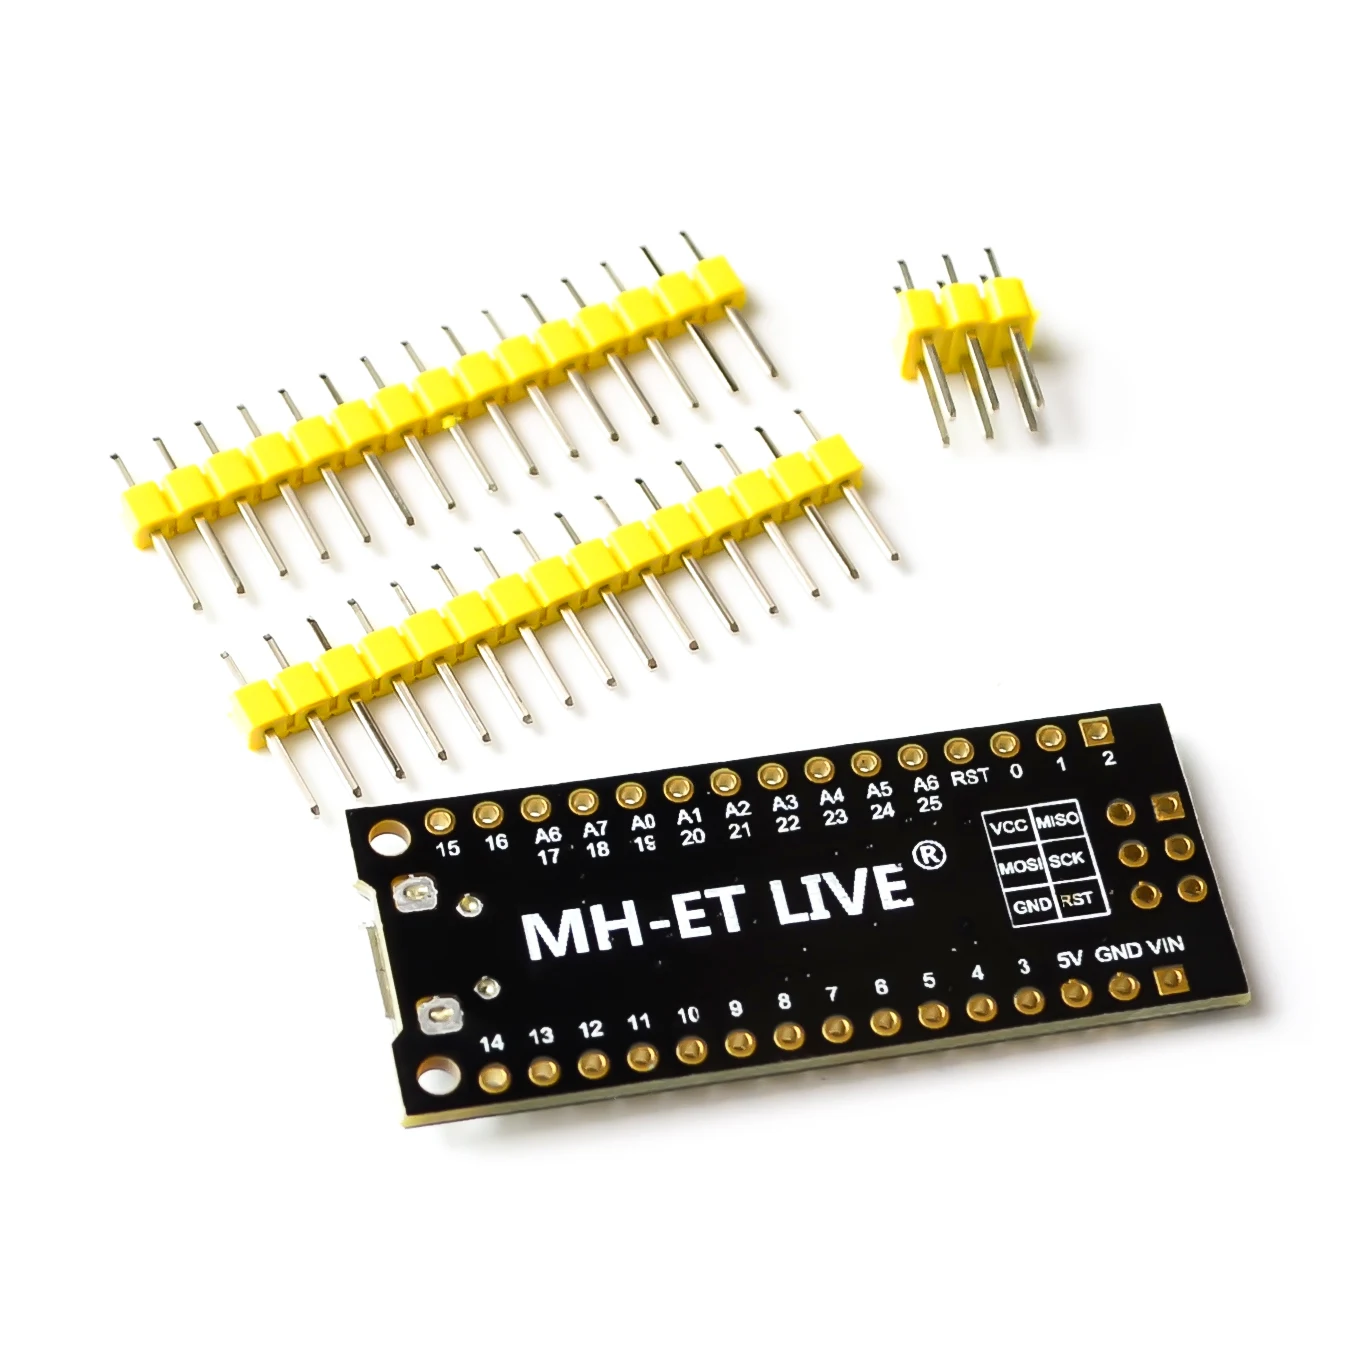 MH-Tiny ATTINY88 микро макетная плата 16 МГц/Digispark ATTINY85 обновленная/NANO V3.0 ATmega328 Расширенная совместимость для Arduino